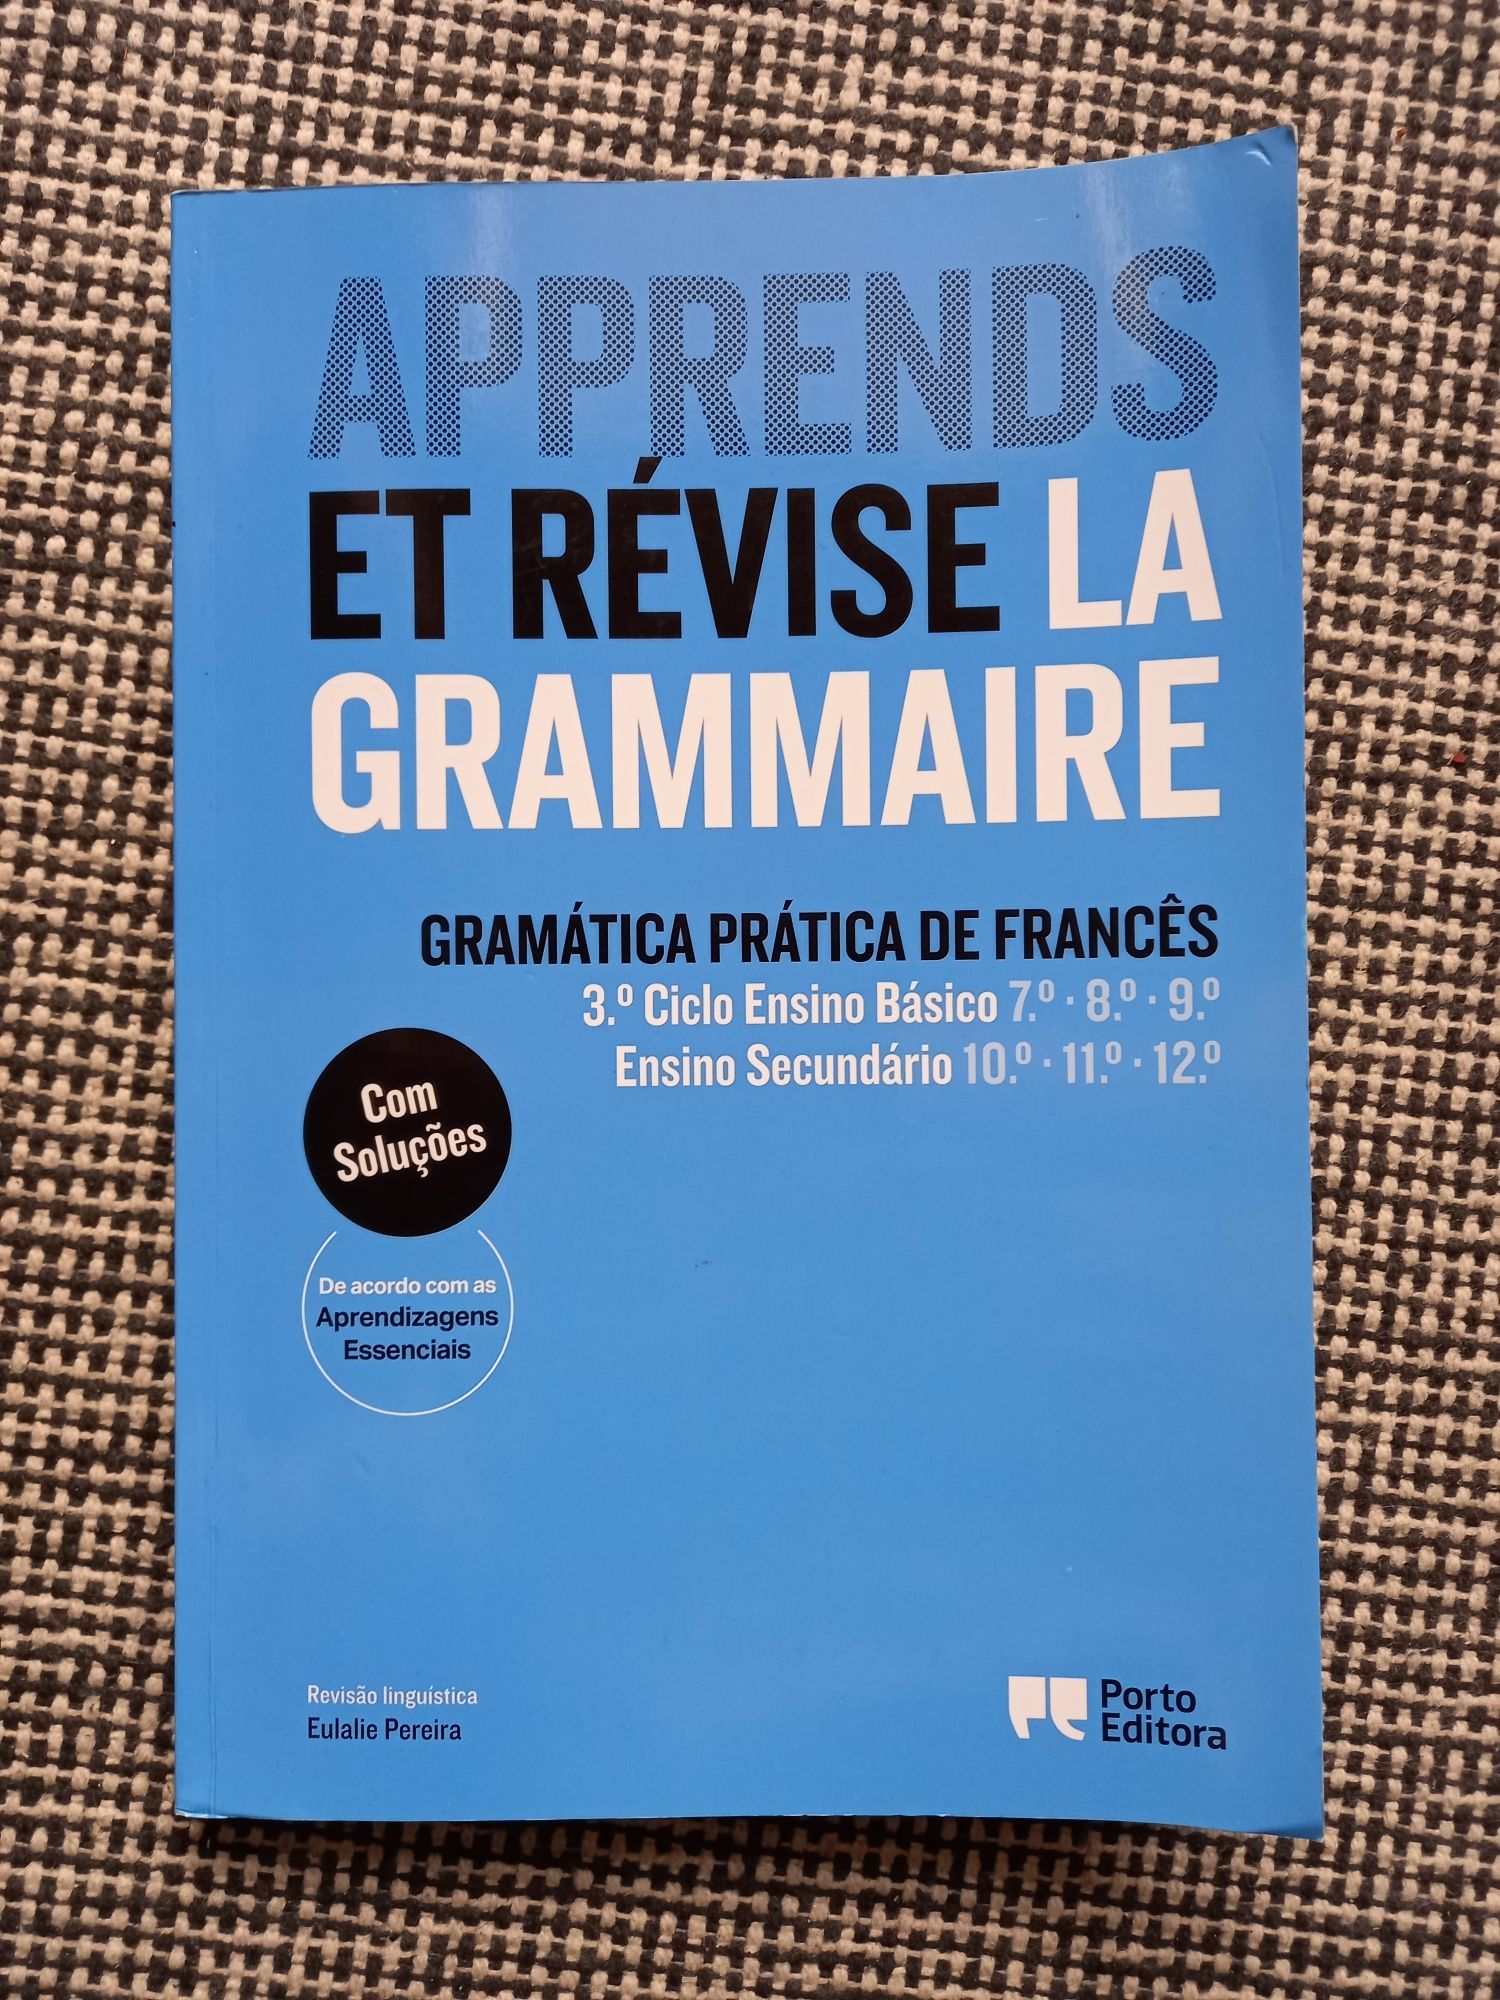 Livro de gramática de francês